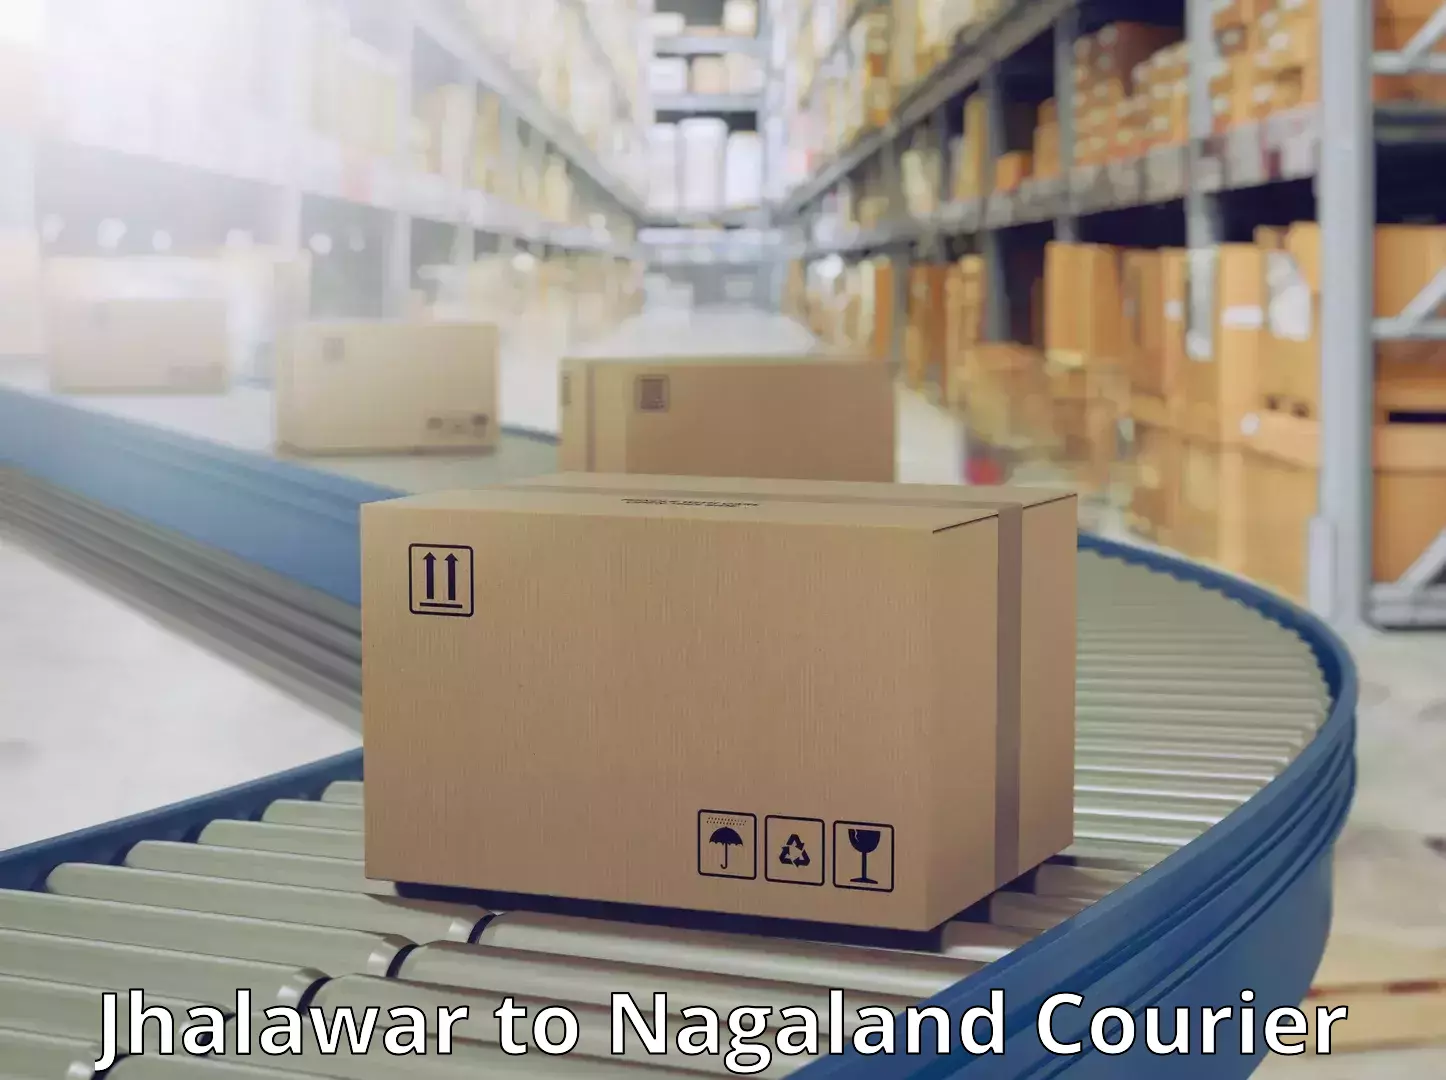 Fast shipping solutions Jhalawar to Nagaland